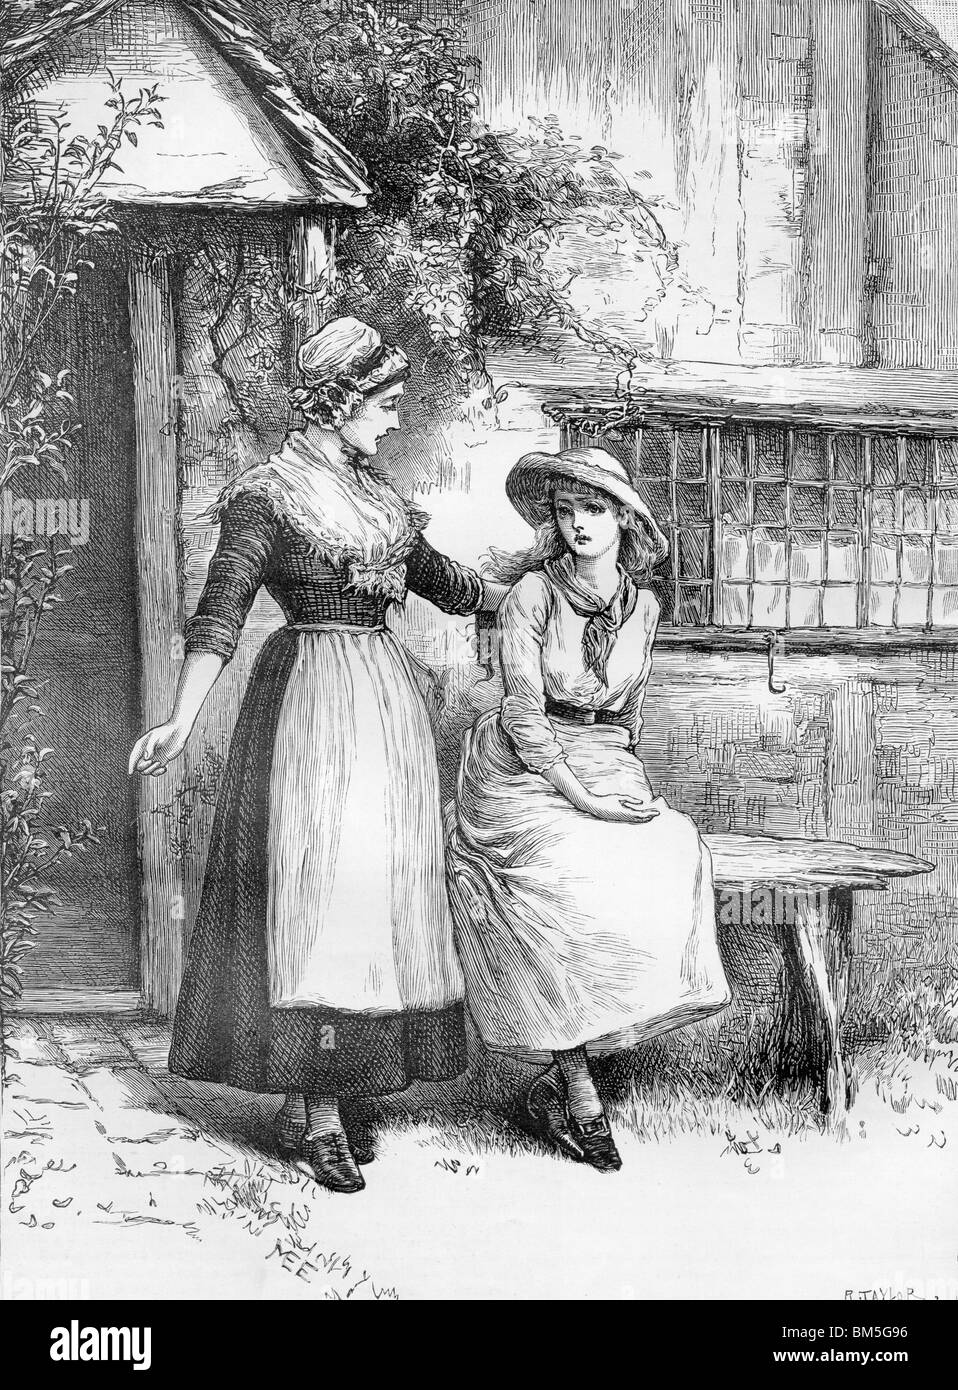 Deux femmes assis dehors sur un banc en bois Banque D'Images